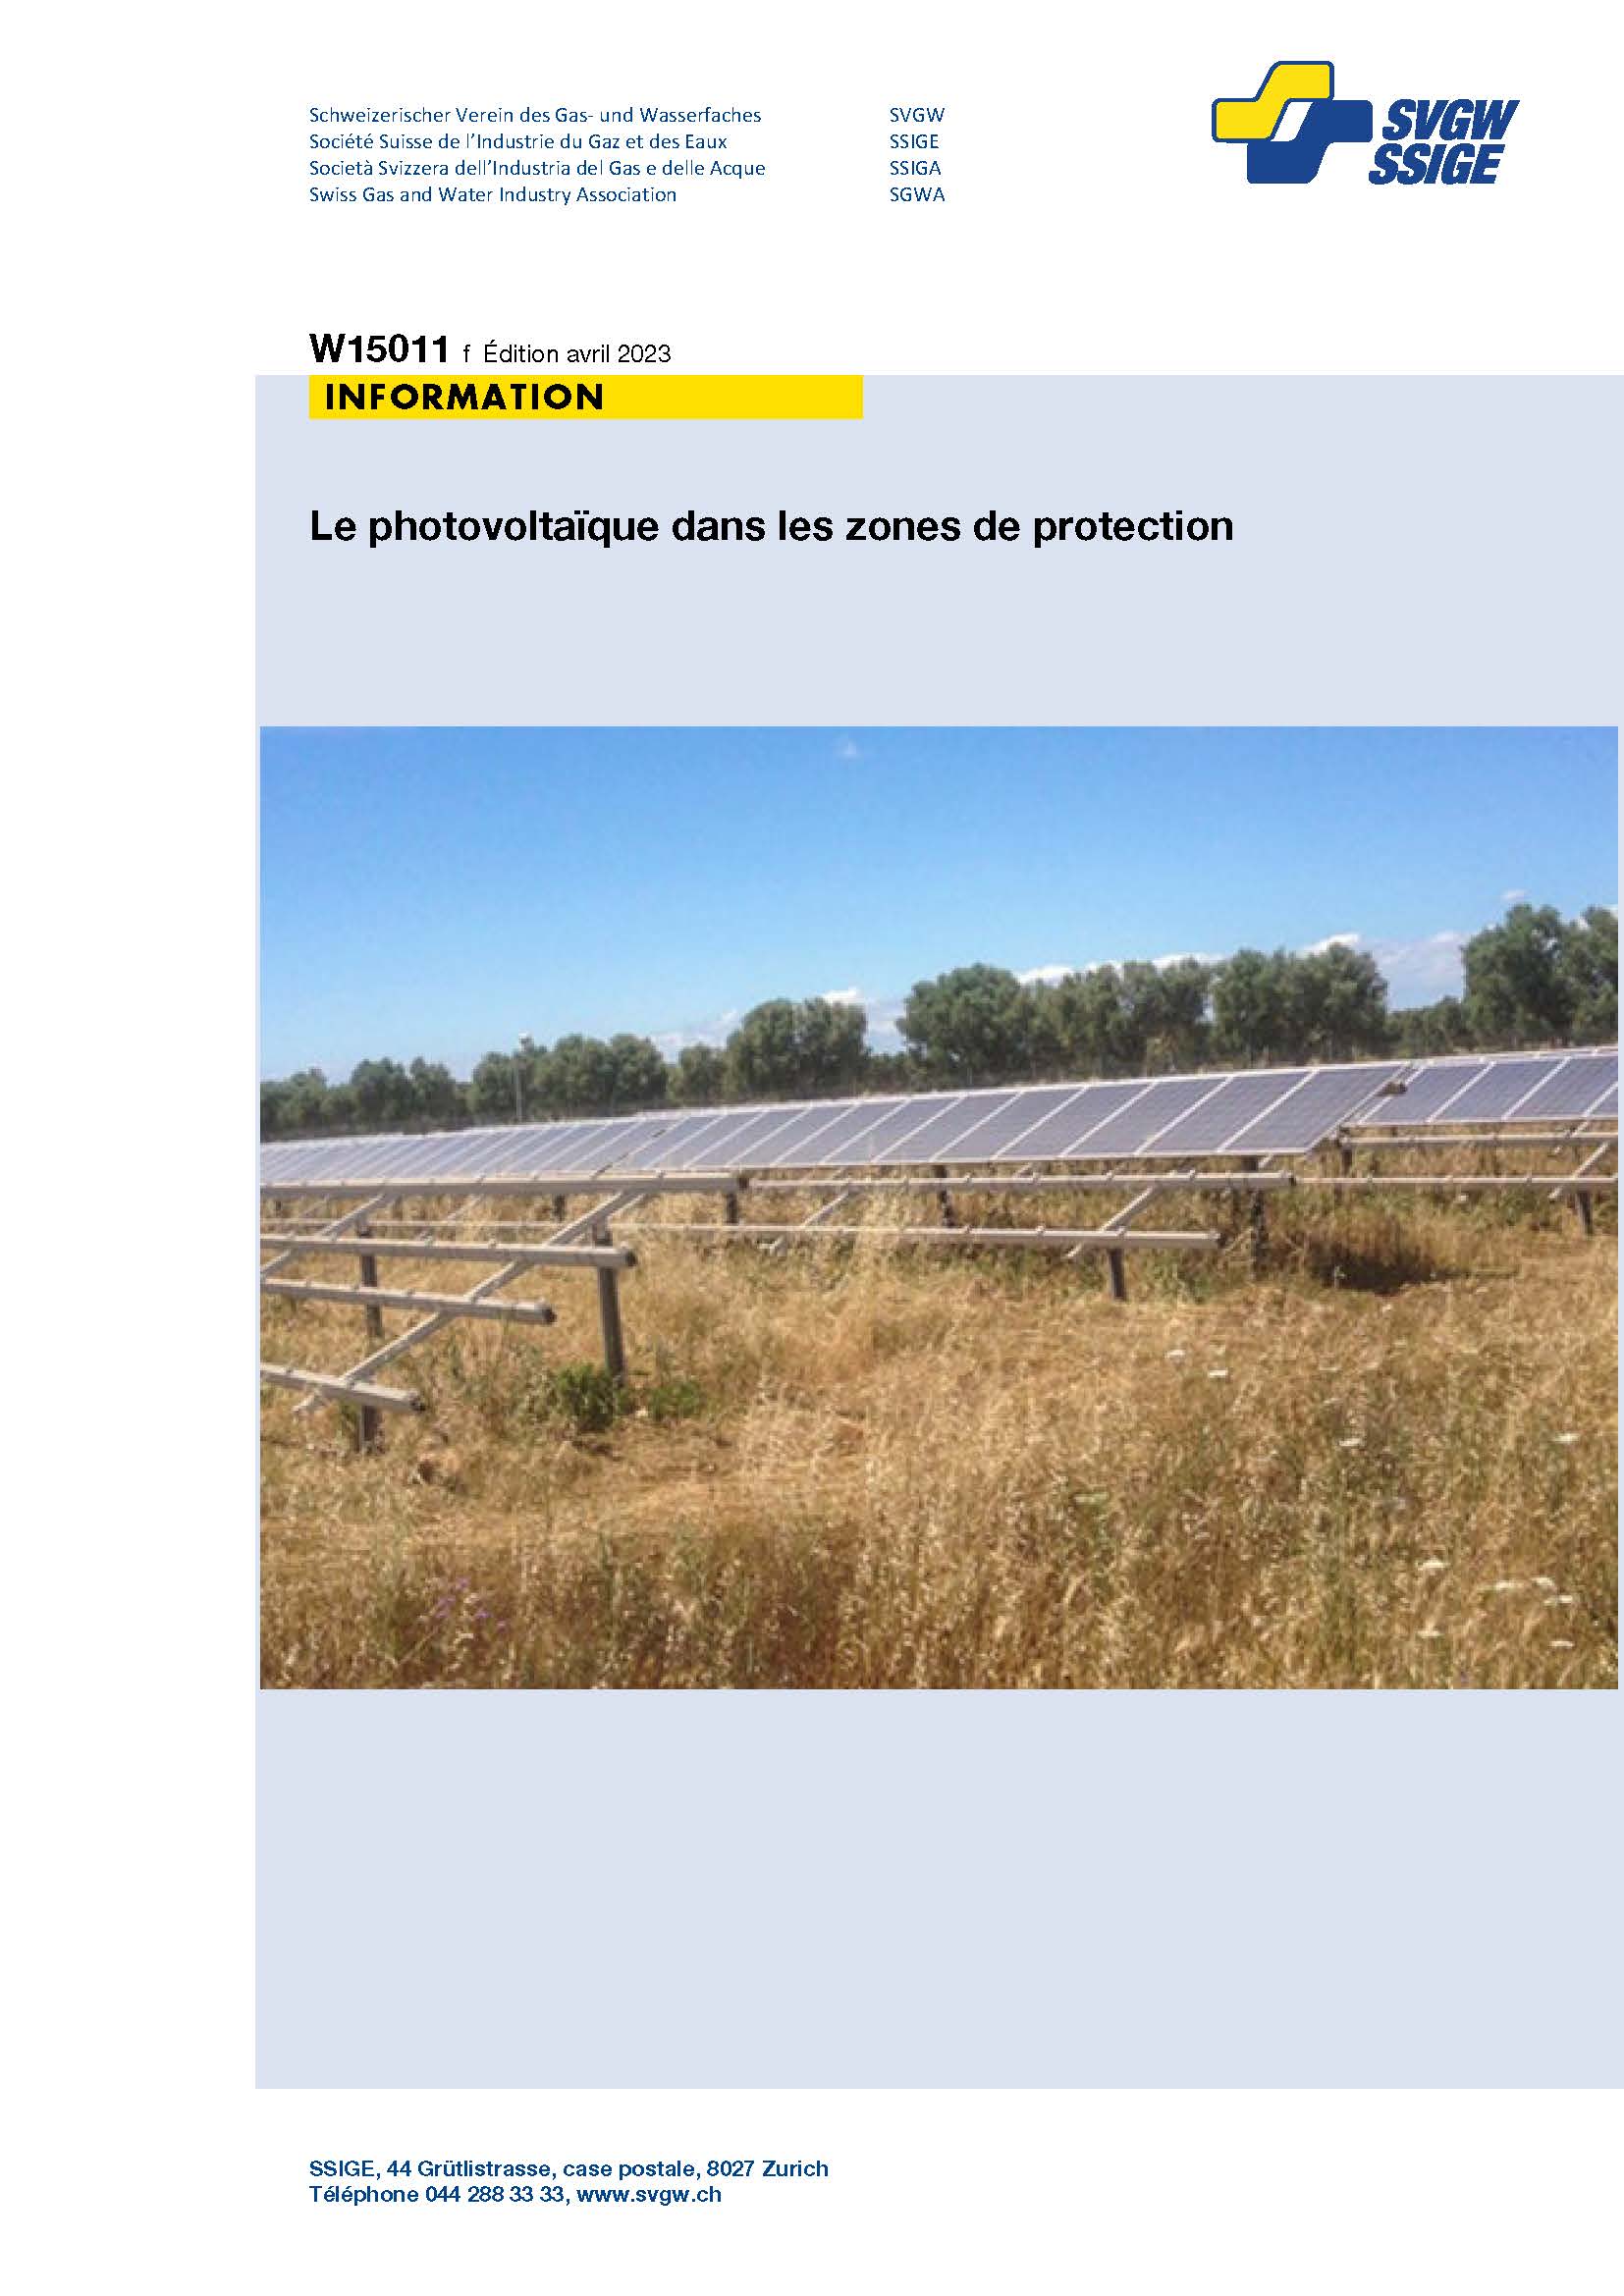 W15011 f Information Le photovoltaïque dans les zones de protection